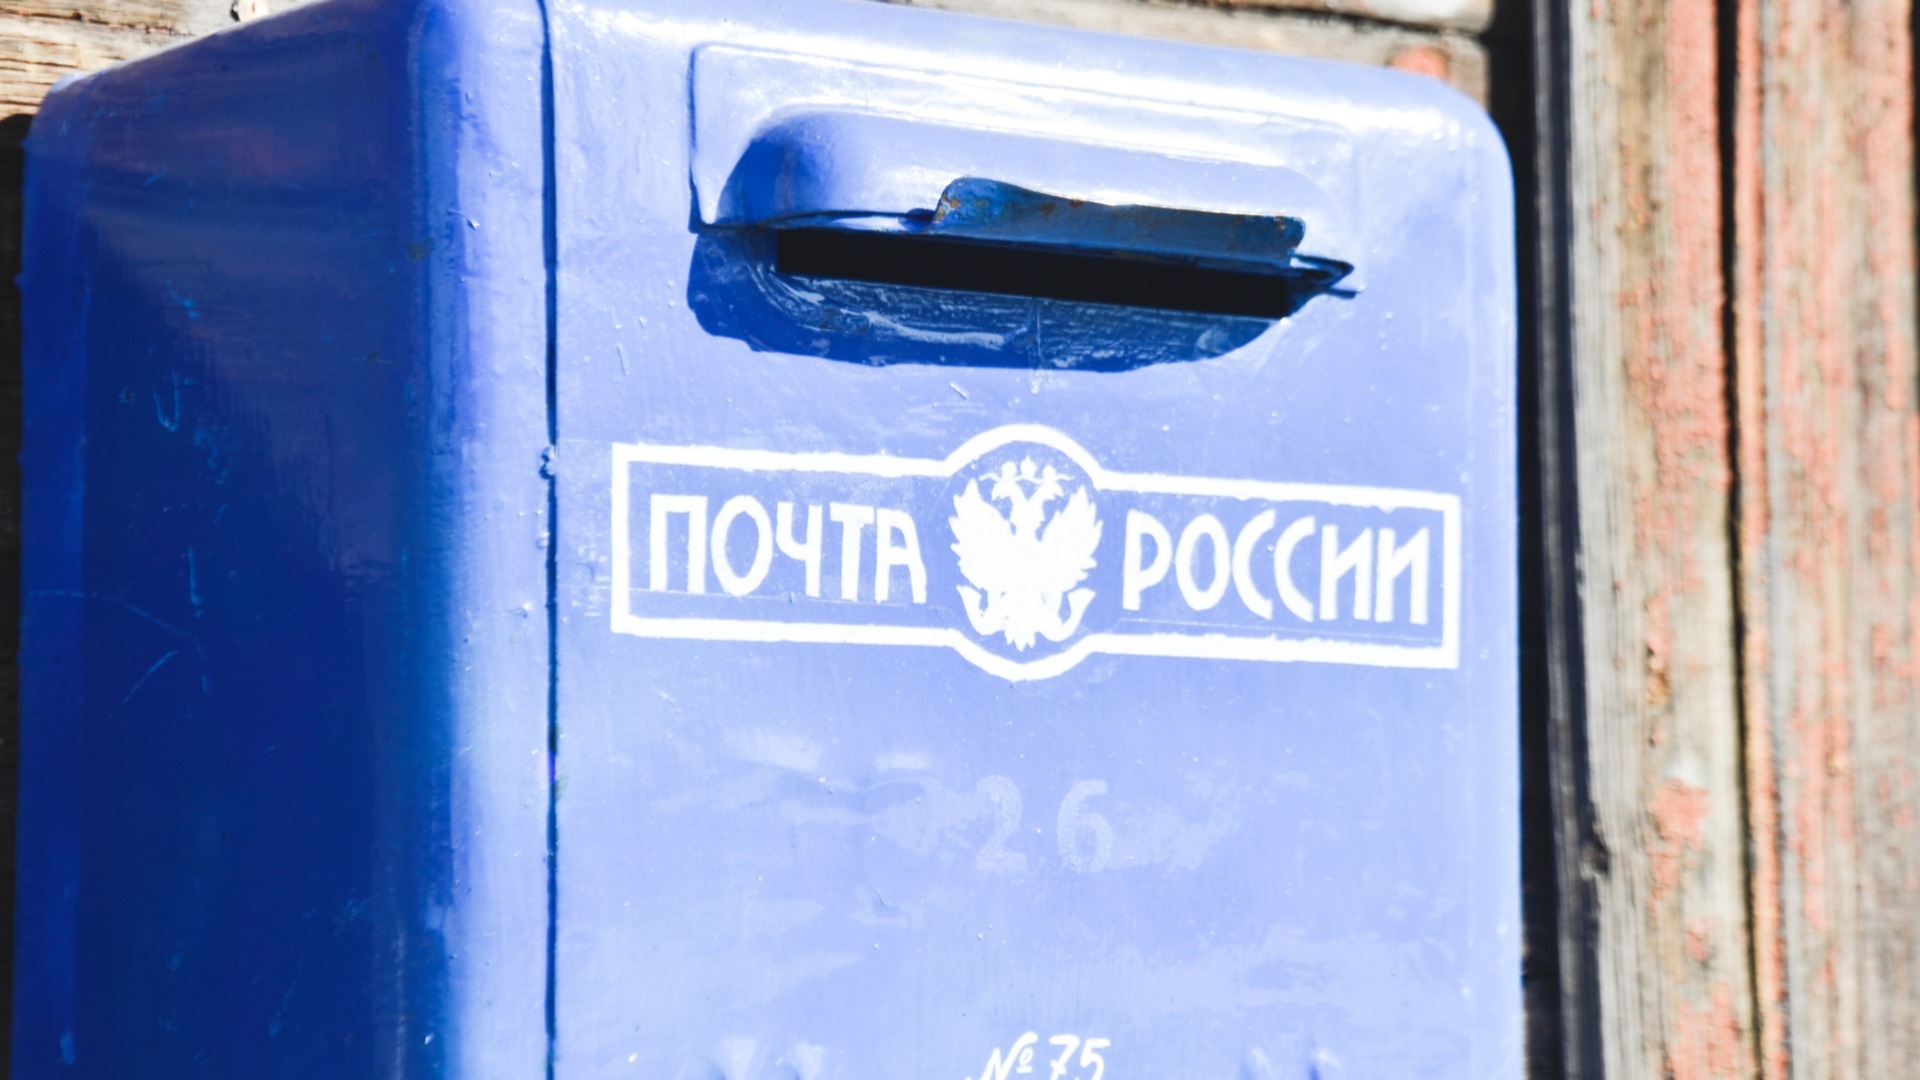 Из-за изменения ставок на «Почте России» произошли массовые увольнения — СМИ